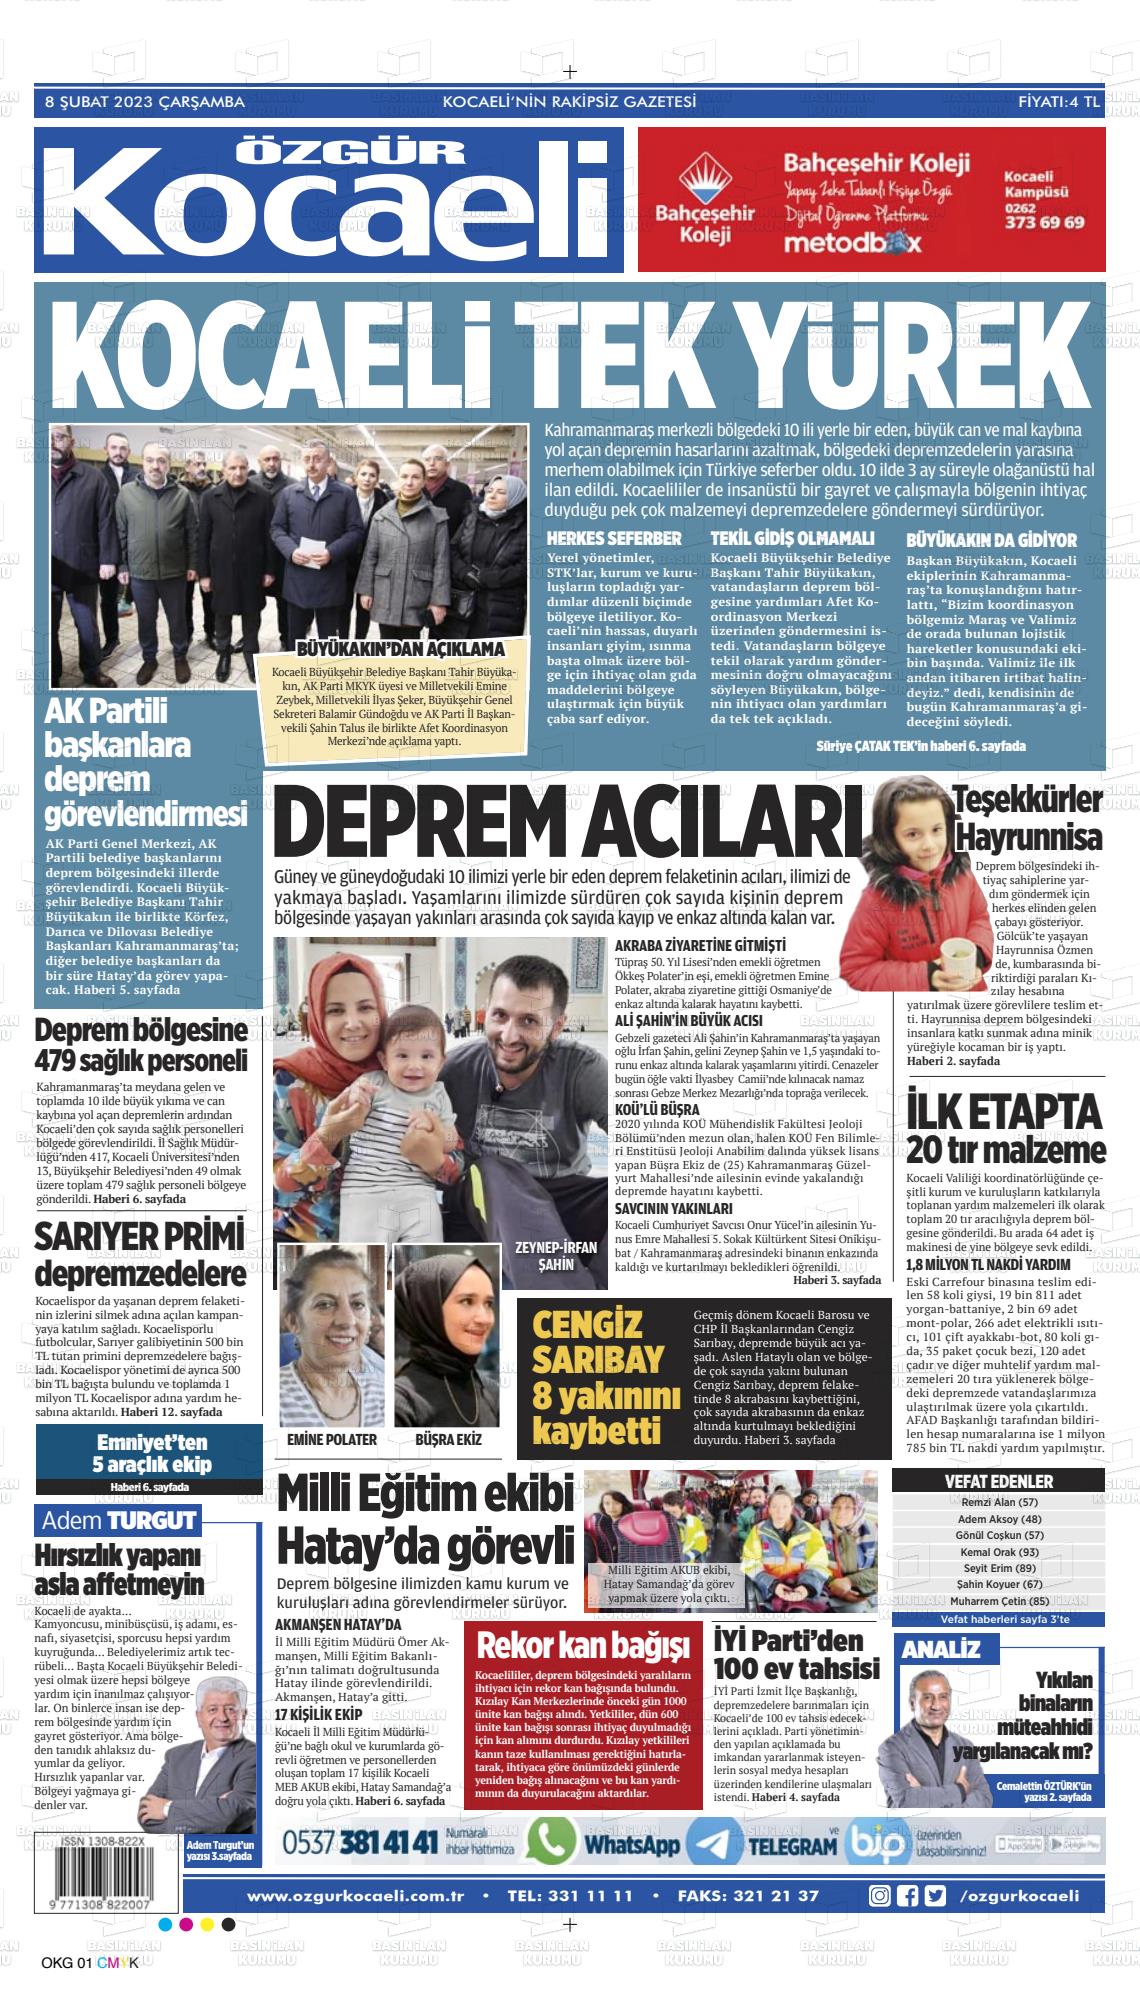 08 Şubat 2023 Özgür Kocaeli Gazete Manşeti